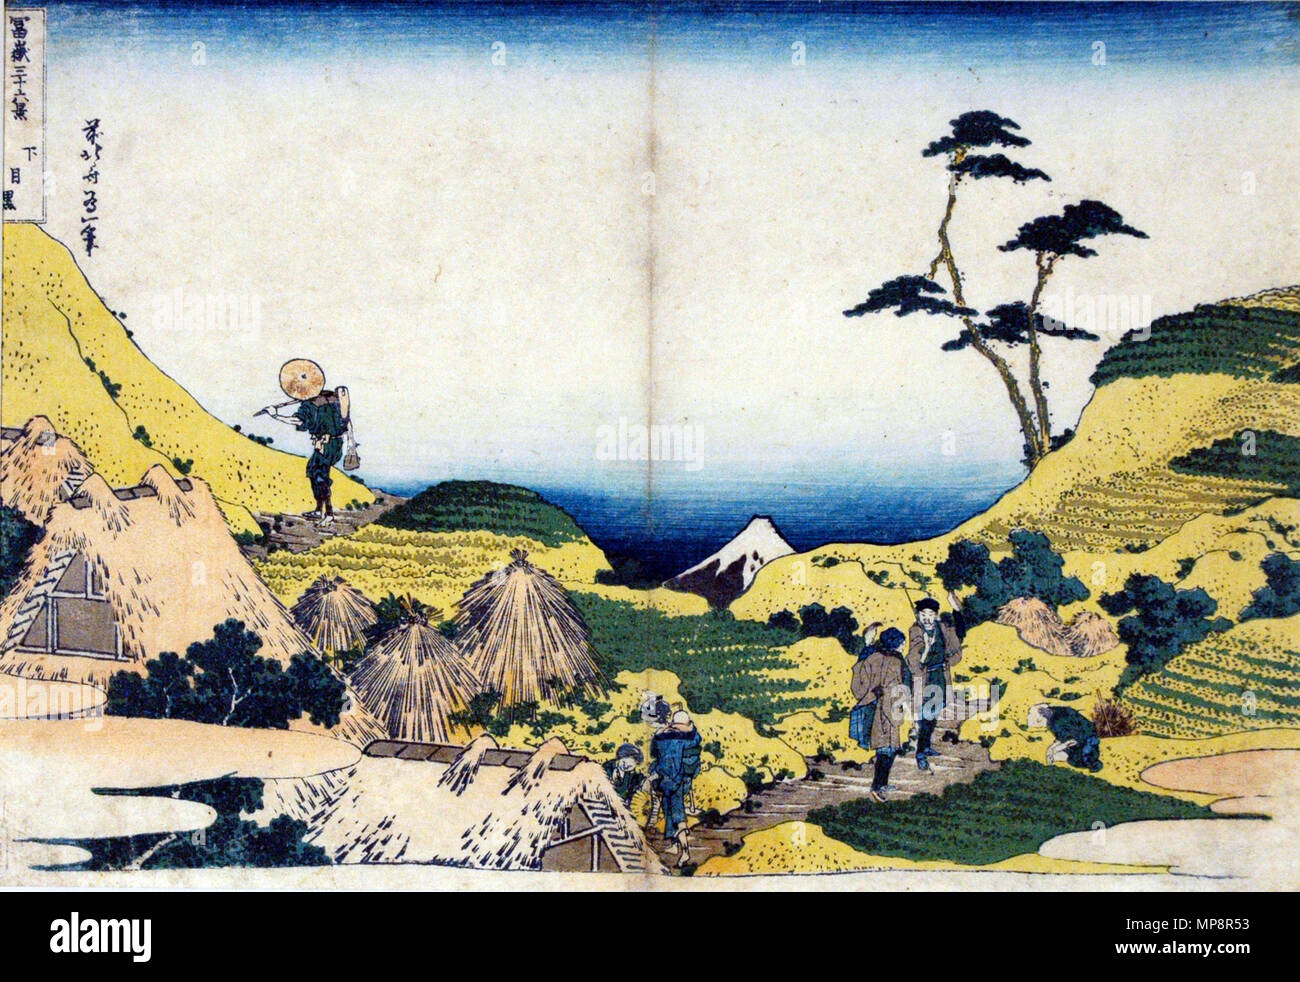 . Englisch: Beitritt Artikelnummer: 1957.184 Anzeige Künstler: Katsushika Hokusai Anzeige Titel: Untere Meguro Übersetzung (s): Shimo meguro Titel der Serie: 36 Blick auf Mount Fuji Suite Name: Fugaka sanjurokkei Erstellungsdatum: Ca. 1831-1834 Medium: Holzschnitt Höhe: 9 cm. Breite: 13 cm. Anzeige Abmessungen: 9 1/4 x 13 1/4 in. (23.5 cm x 33.66 cm) Herausgeber: Nishimuraya Yohachi Kreditlinie: Nachlass von Frau Cora Timken Burnett Sammlung: <a href='Http://www.sdmart.org/art/our-collection/asian-art' rel='nofollow'> Die San Diego Museum der Kunst</a>. 10 Mai 2007, 09:51:19. Englisch: thesandiegomu Stockfoto